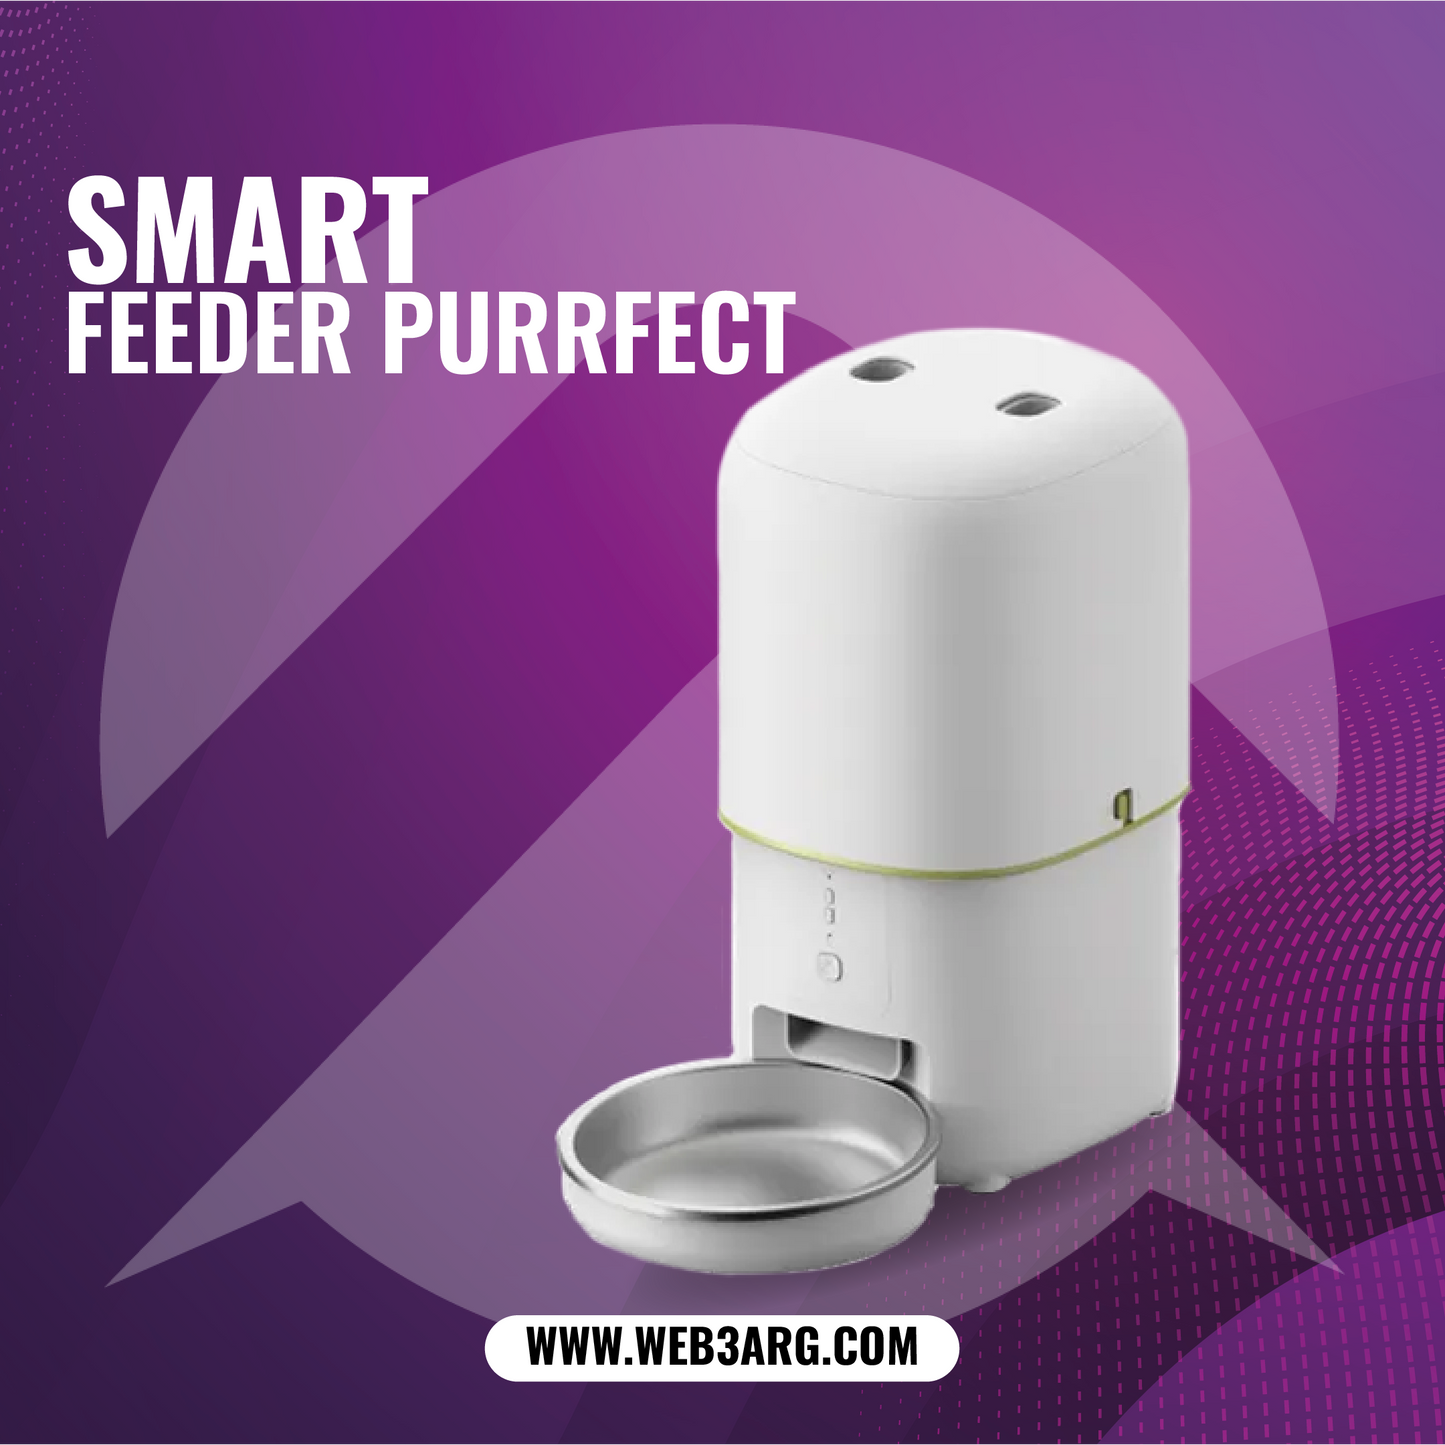 SMART FEEDER PURRFECT - Premium Comedero de Web3Arg - Solo $119875! Compra ahora Web3Arg